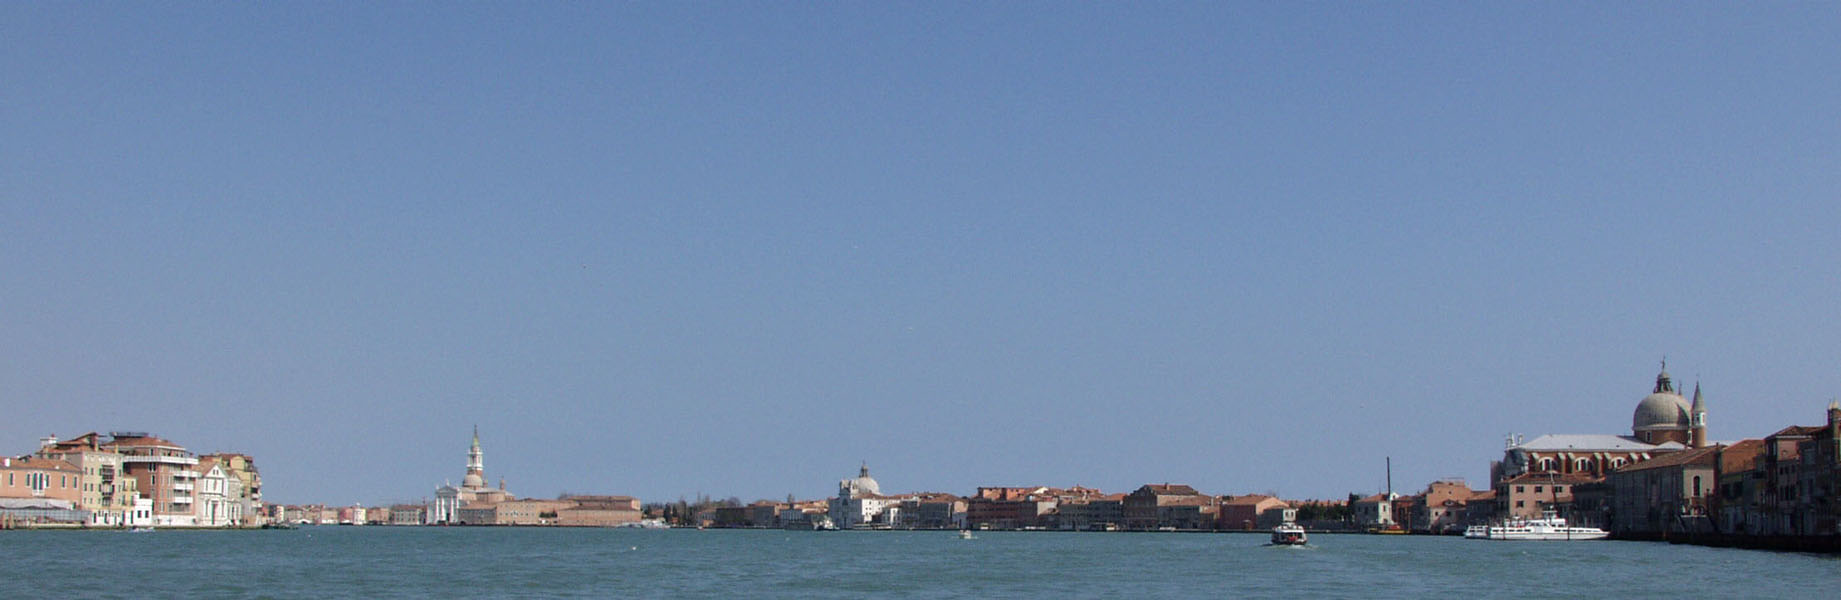 Canale di San Giorgio Venezia